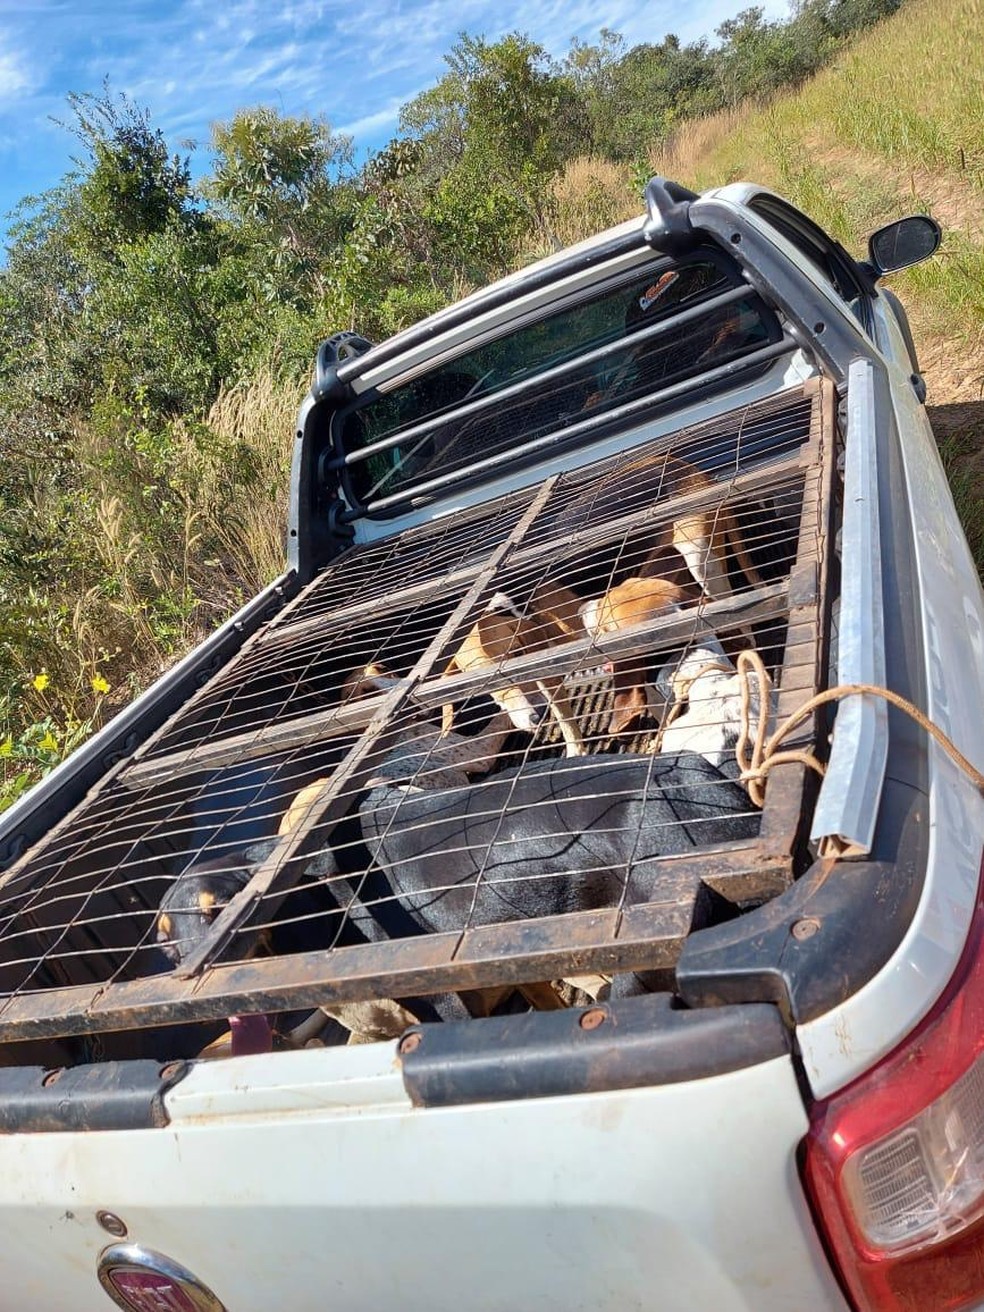 Junto ao animal, havia seis cachorros presos em uma gaiolaa. — Foto: PM/MT